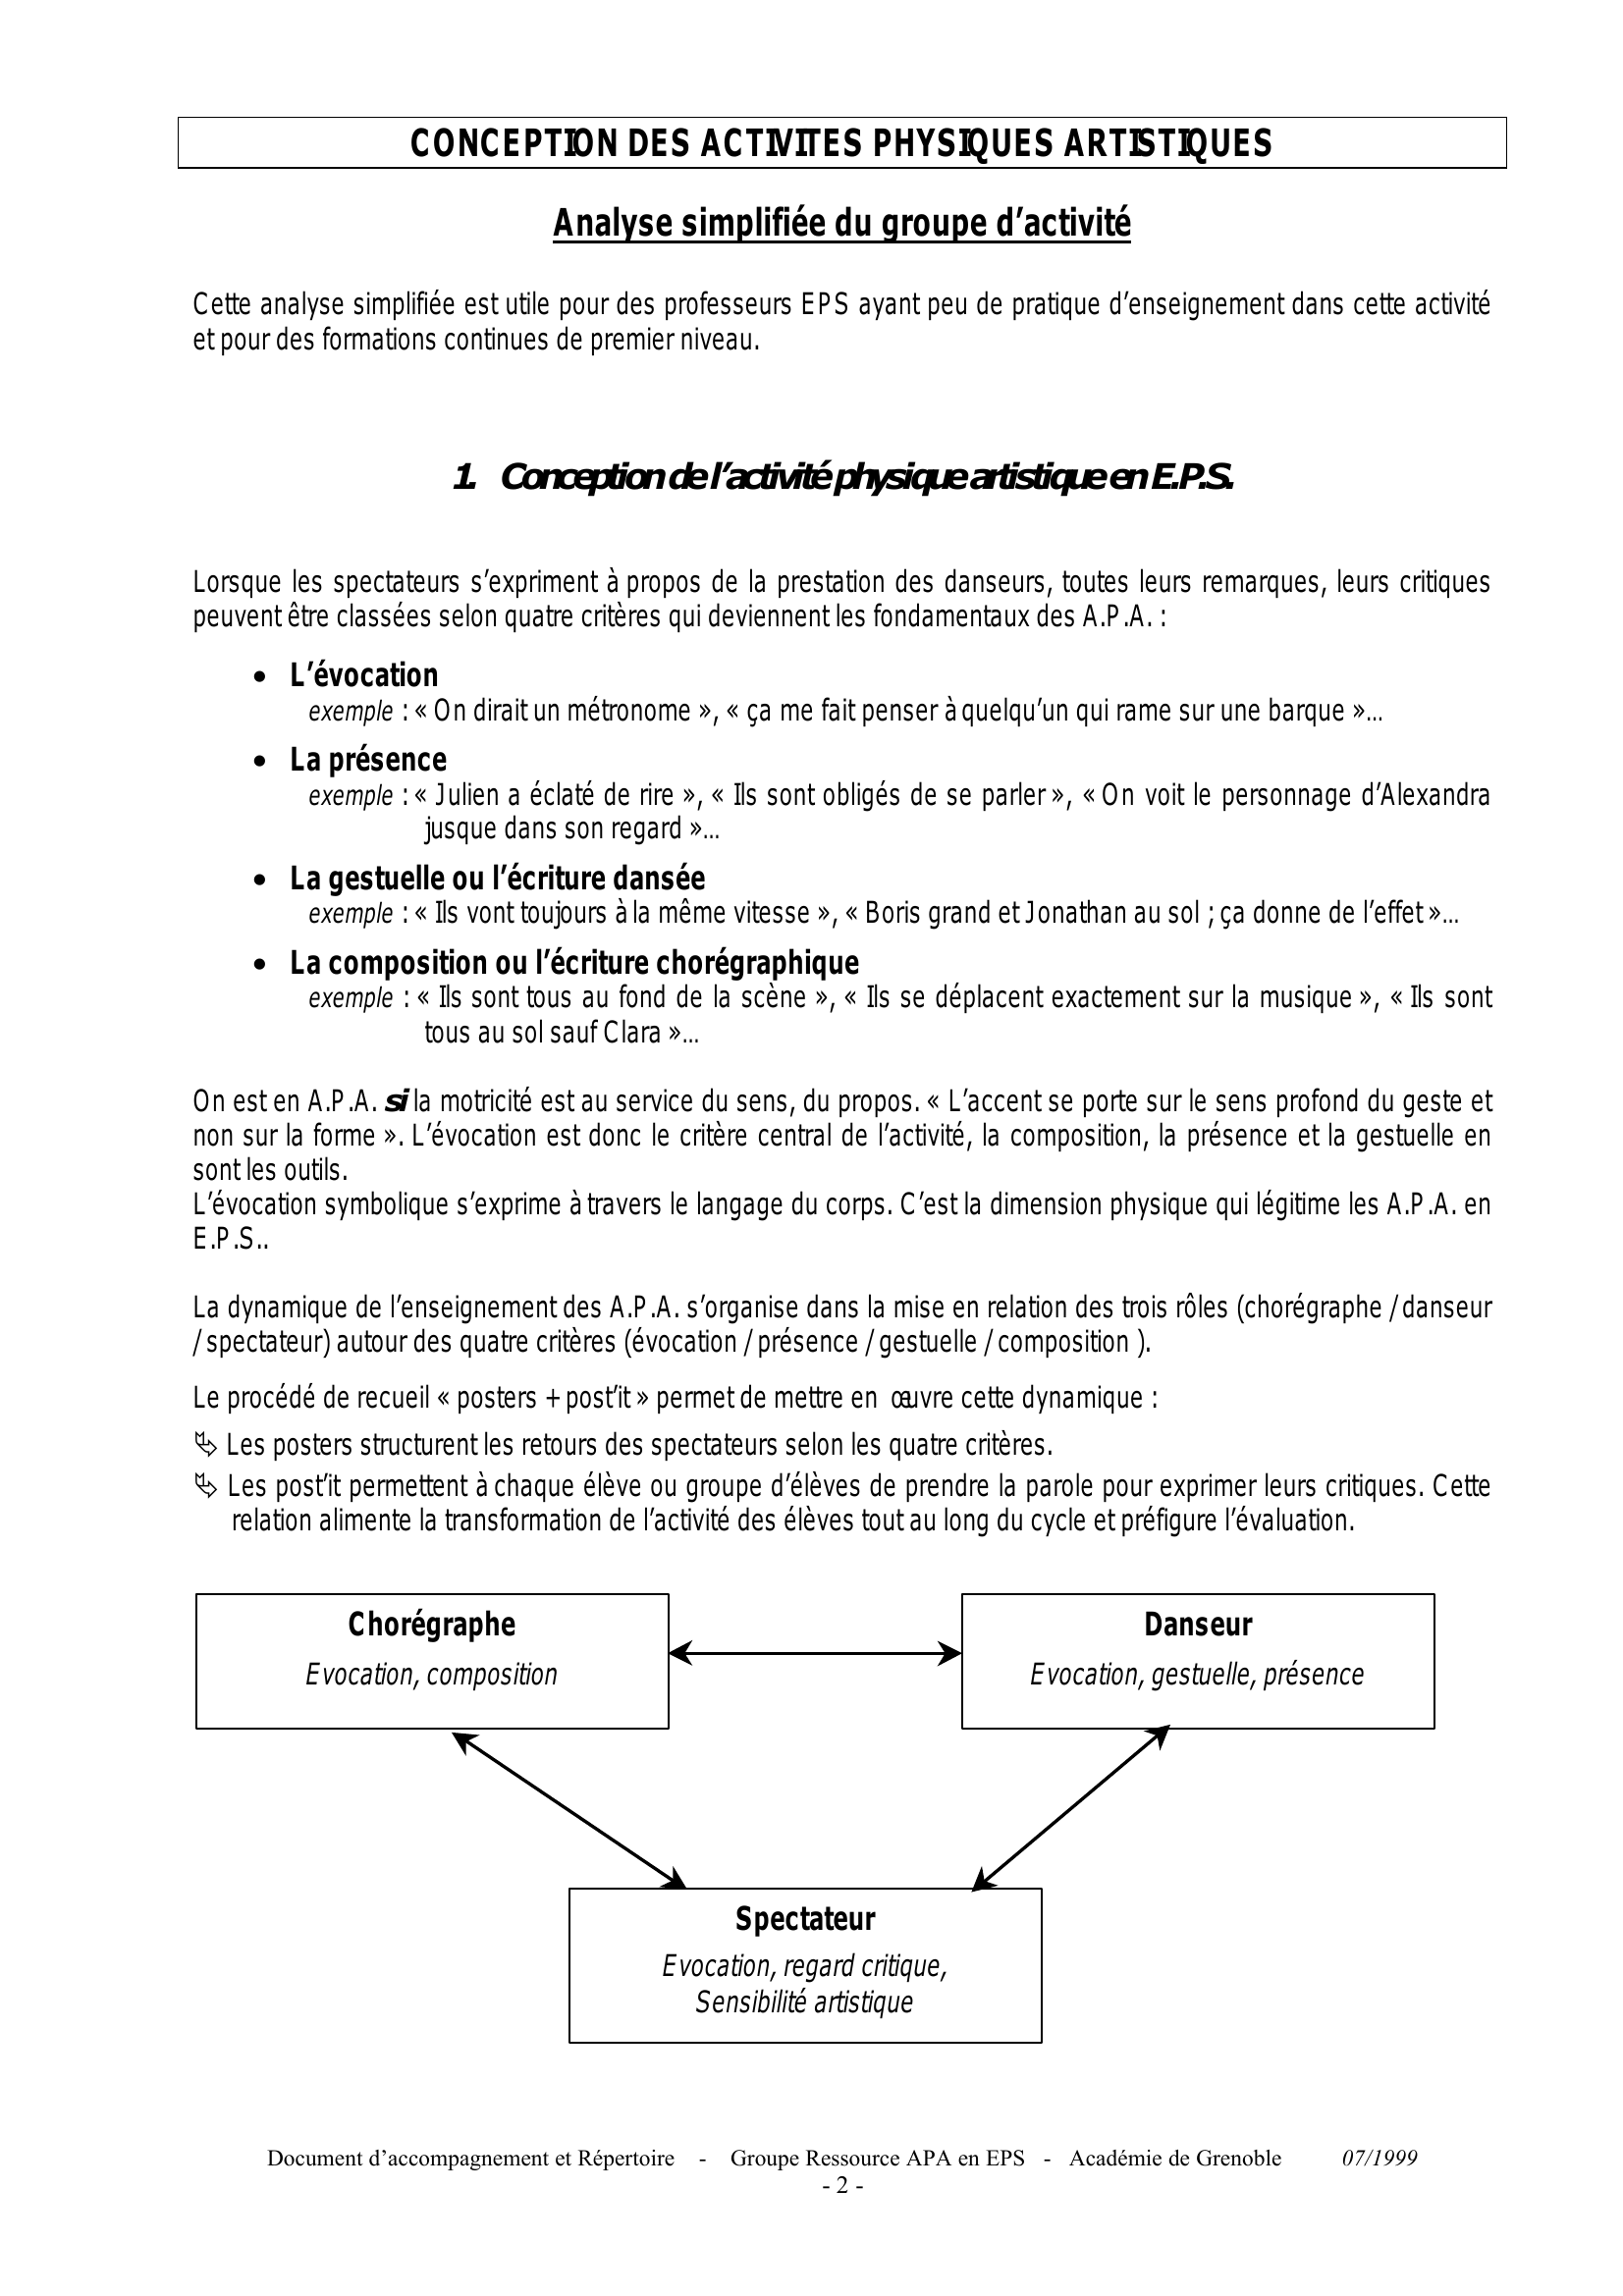 Prévisualisation du document Académie de Grenoble

DOCUMENT D'ACCOMPAGNEMENT POUR L'ENSEIGNEMENT DES ACTIVITES
PHYSIQUES ARTISTIQUES EN